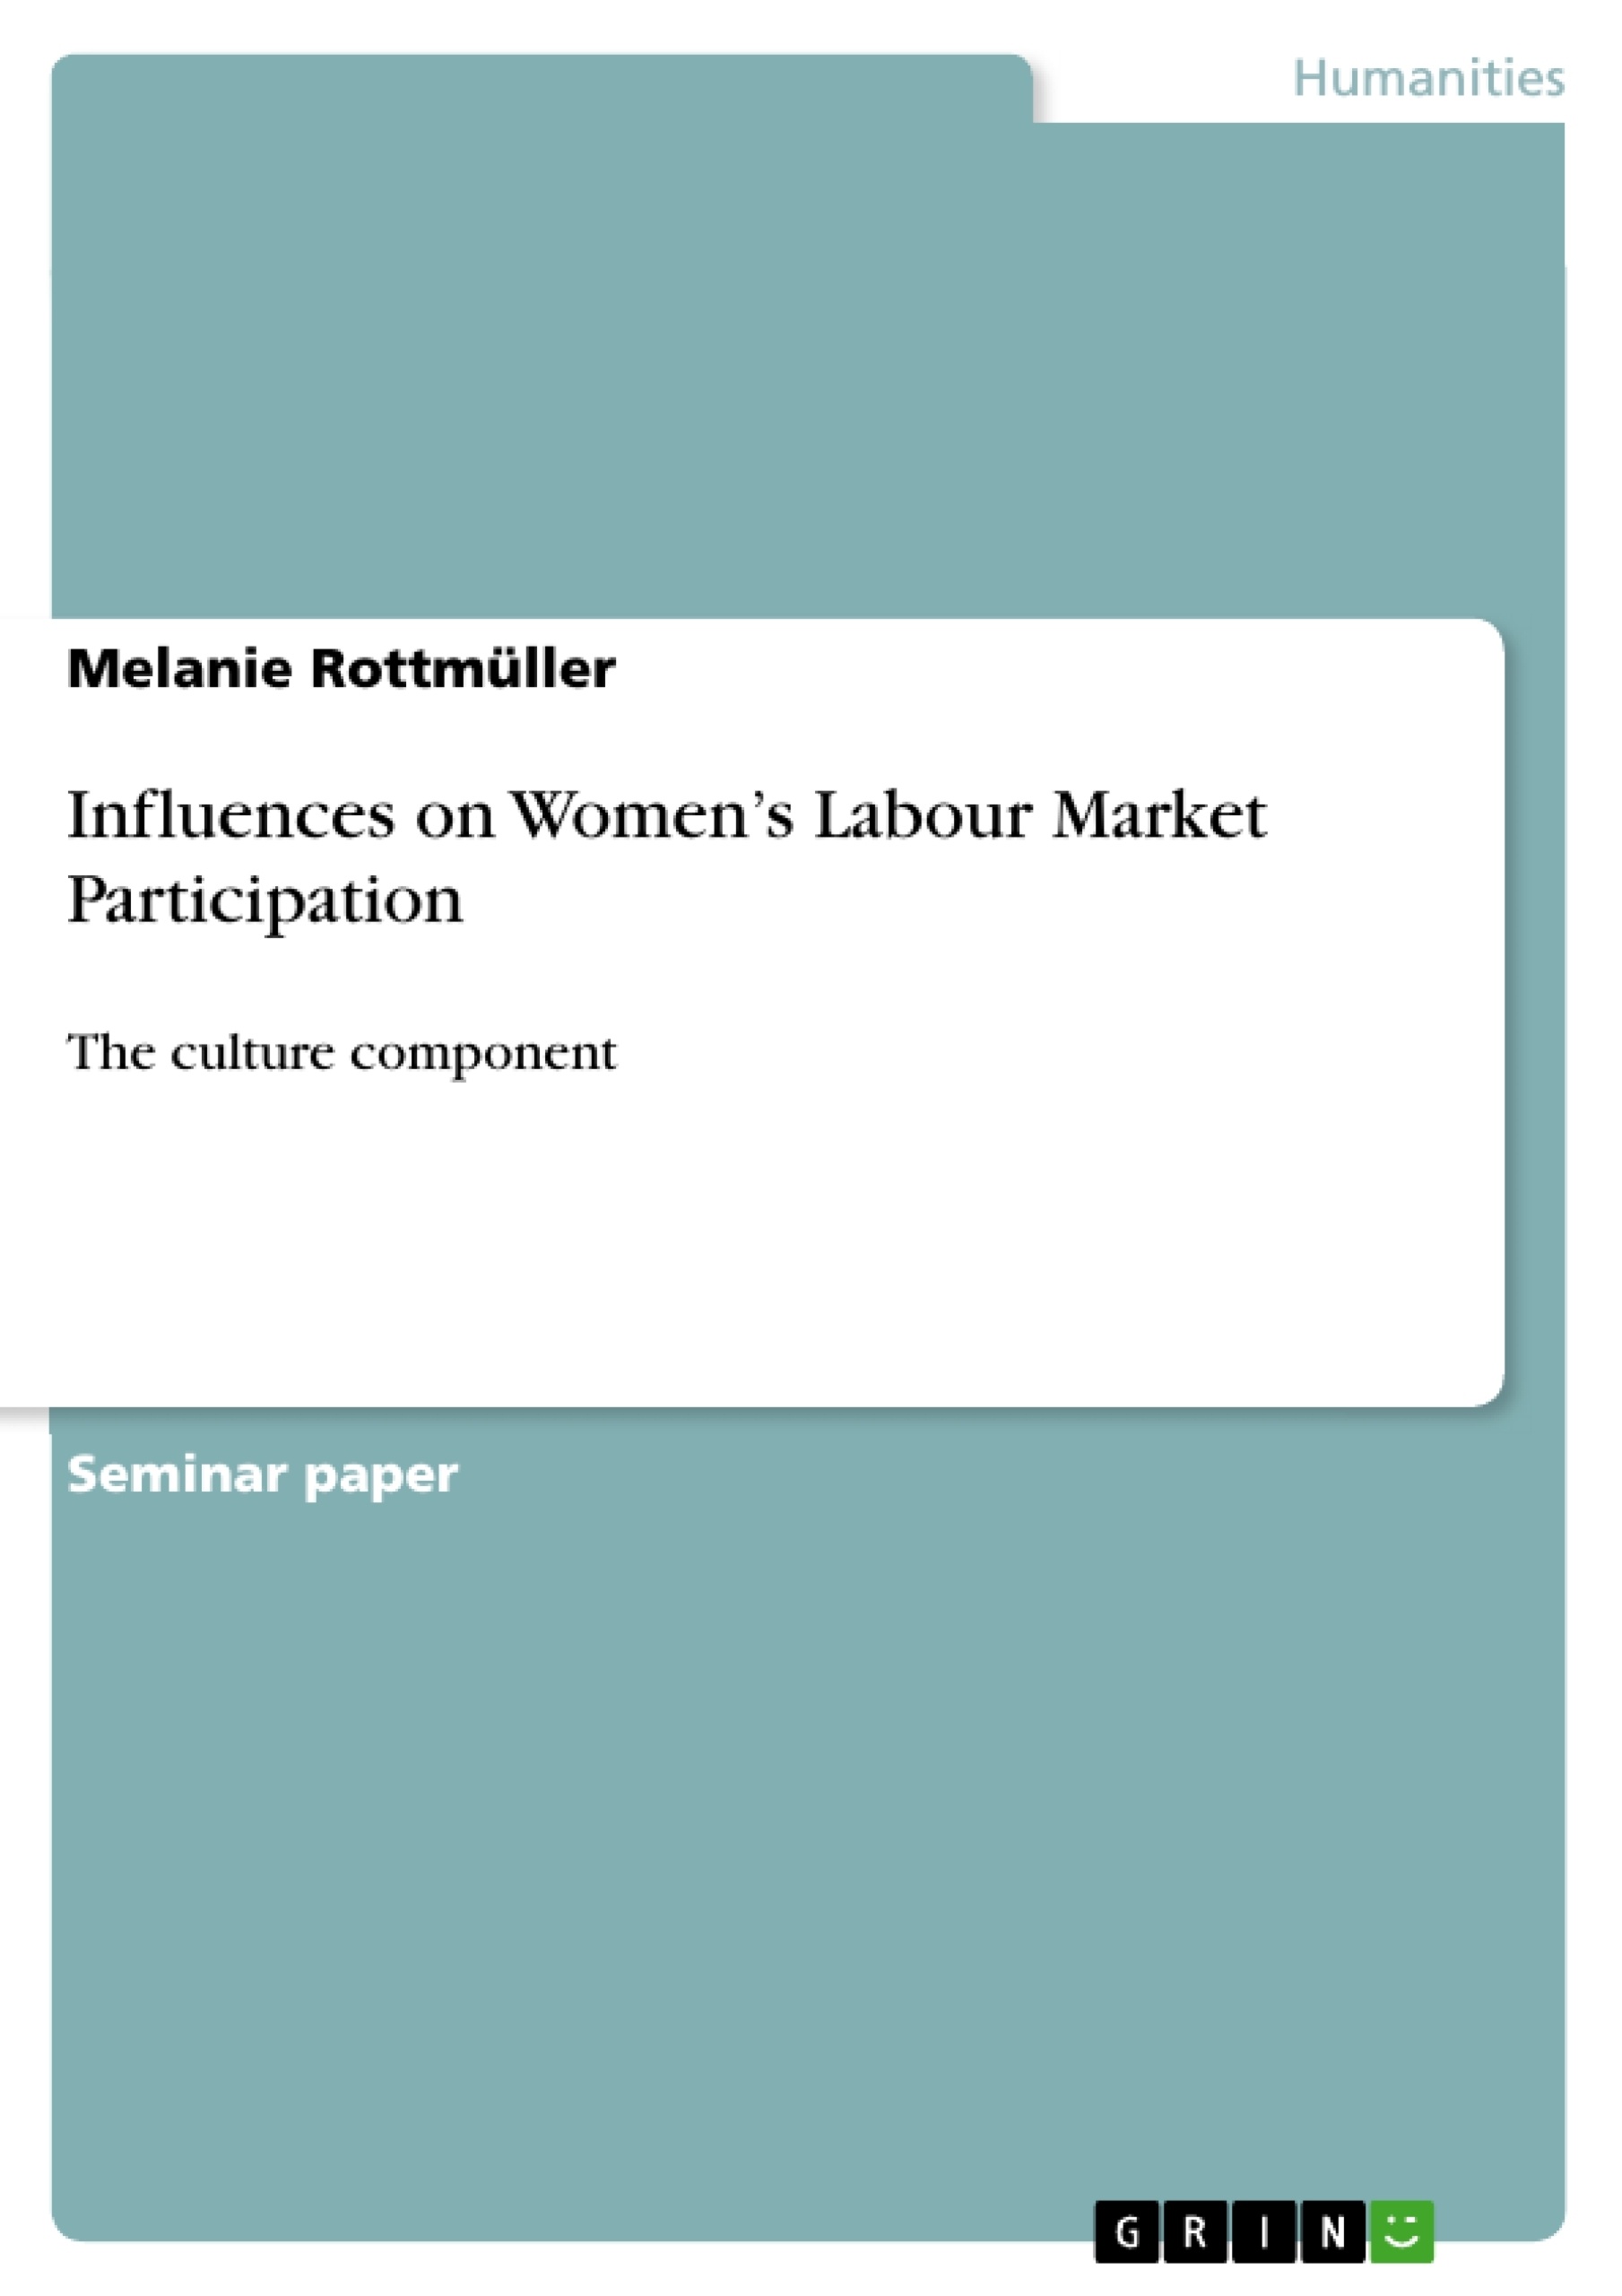 Title: Influences on Women’s Labour Market Participation